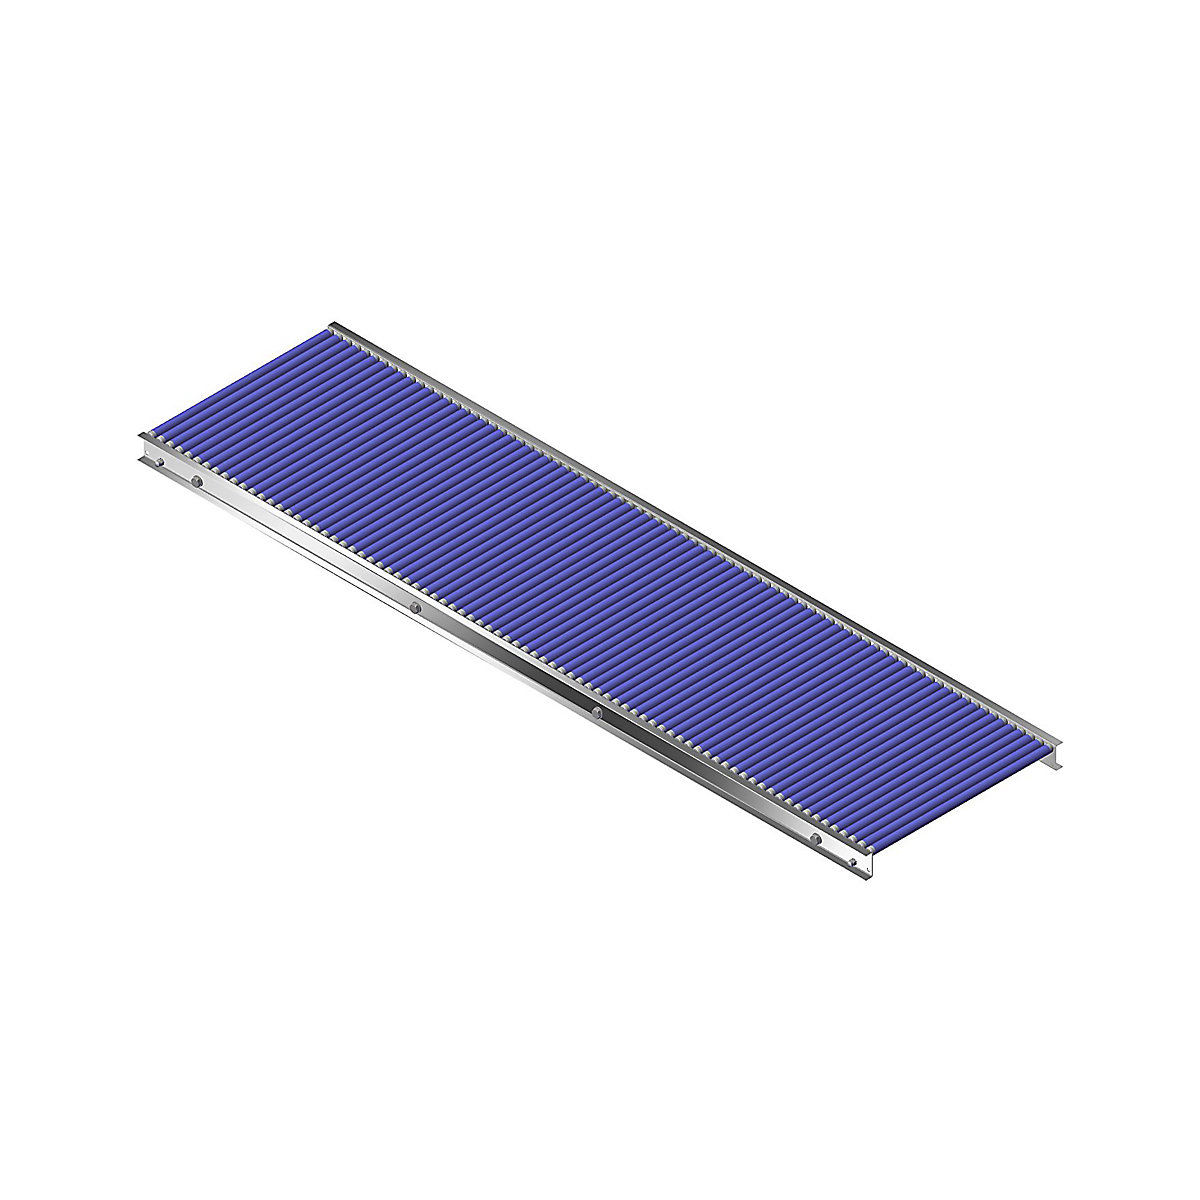 Gura – Malá valčeková dráha, hliníkový rám s plastovými valčekmi, šírka dráhy 500 mm, vzdialenosť osí 25 mm, dĺžka 2,0 m